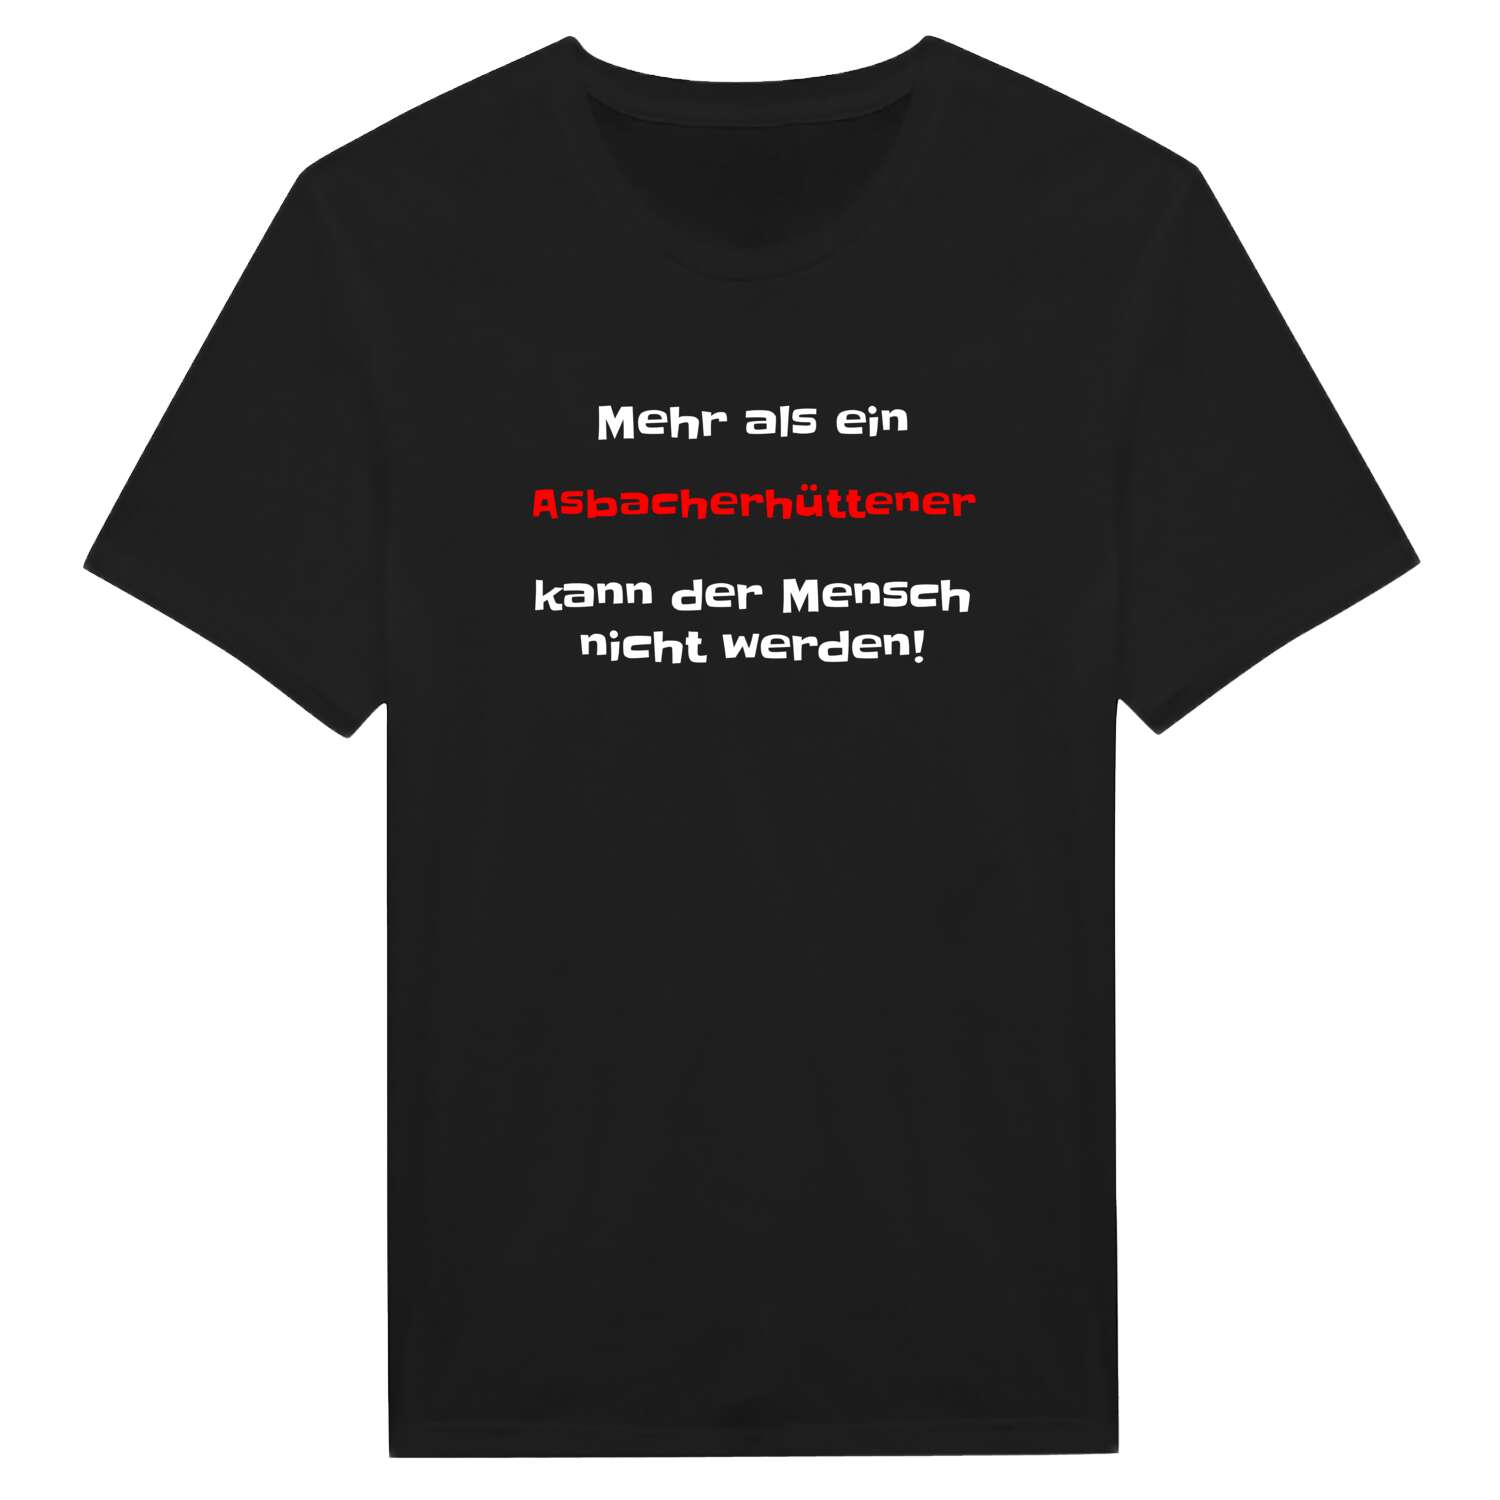 Asbacherhütte T-Shirt »Mehr als ein«